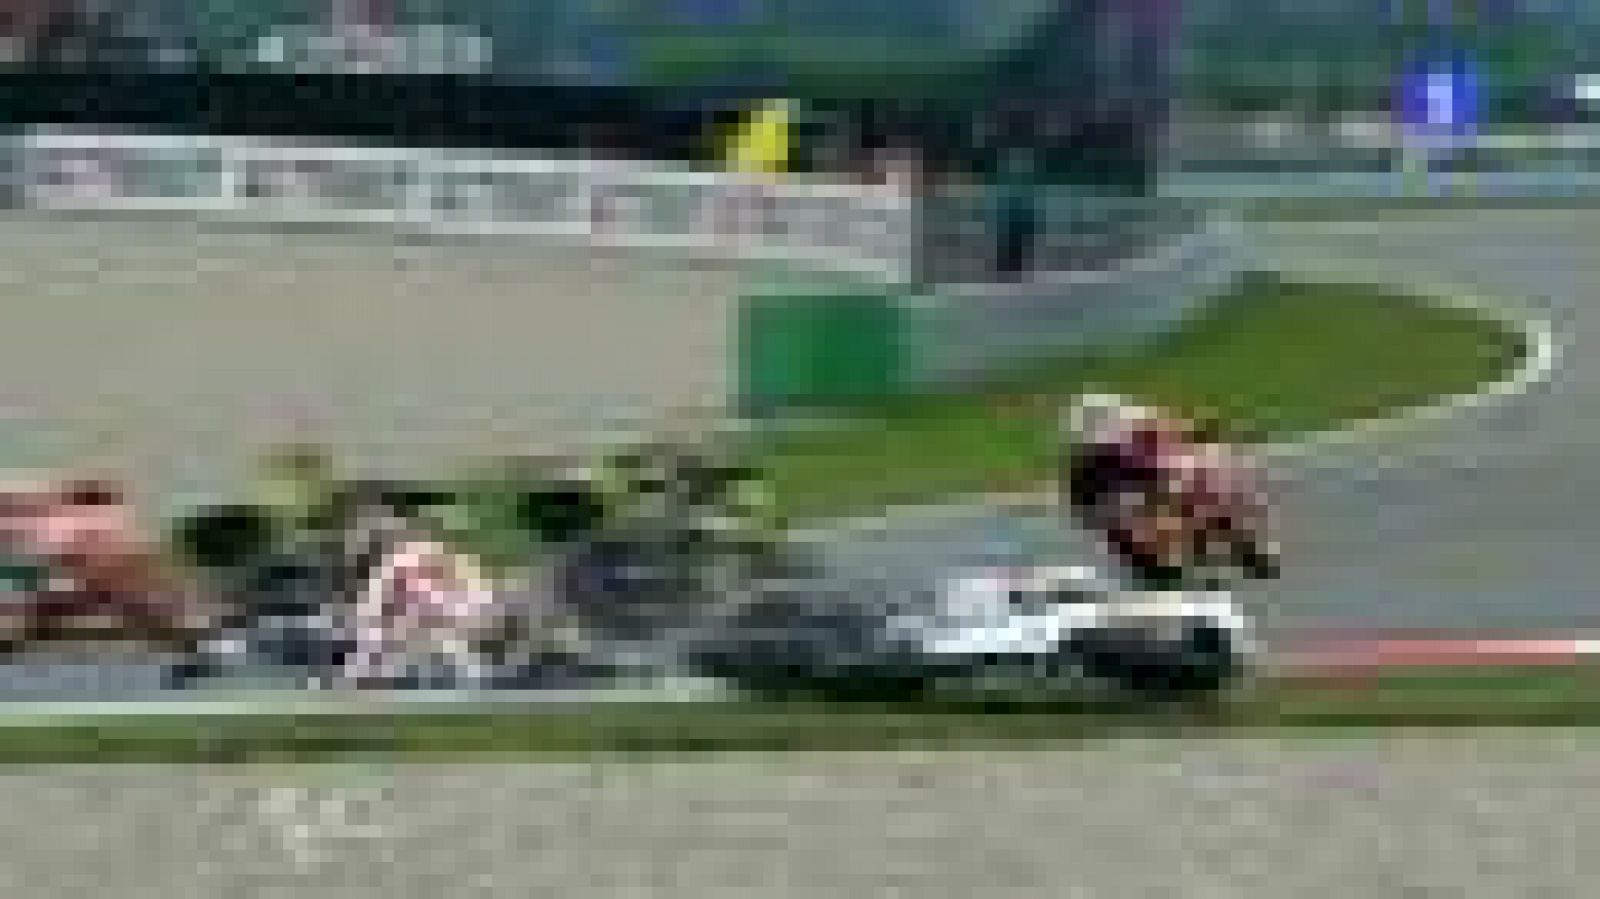 En la primera curva de izquierdas del circuito, Simoncelli y Lorenzo se han ido al suelo. Afortunadamente los dos han seguido en la carrera.